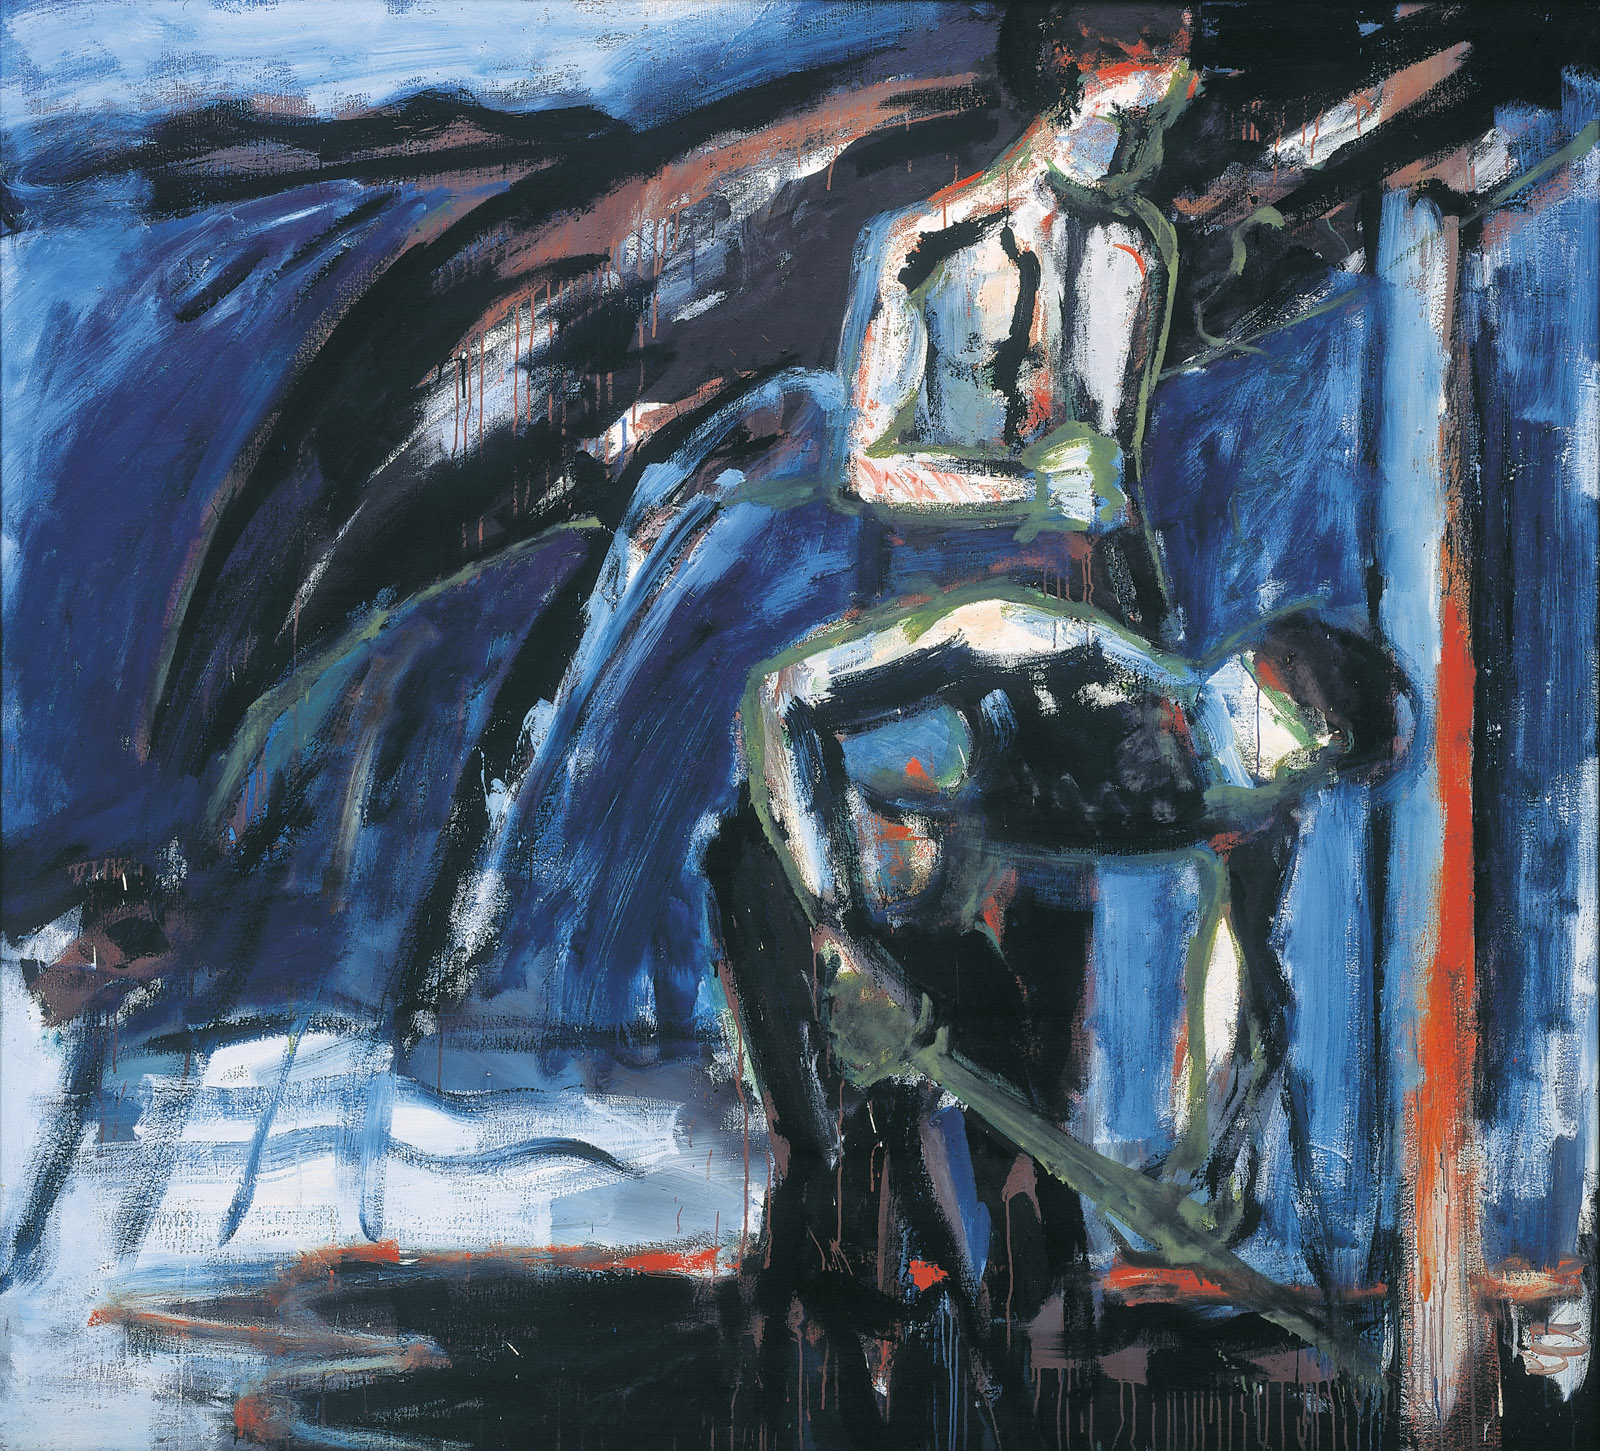 Bernd Koberling: Strandarbeiter, 1980, Öl auf Leinwand, 190 x 210 cm